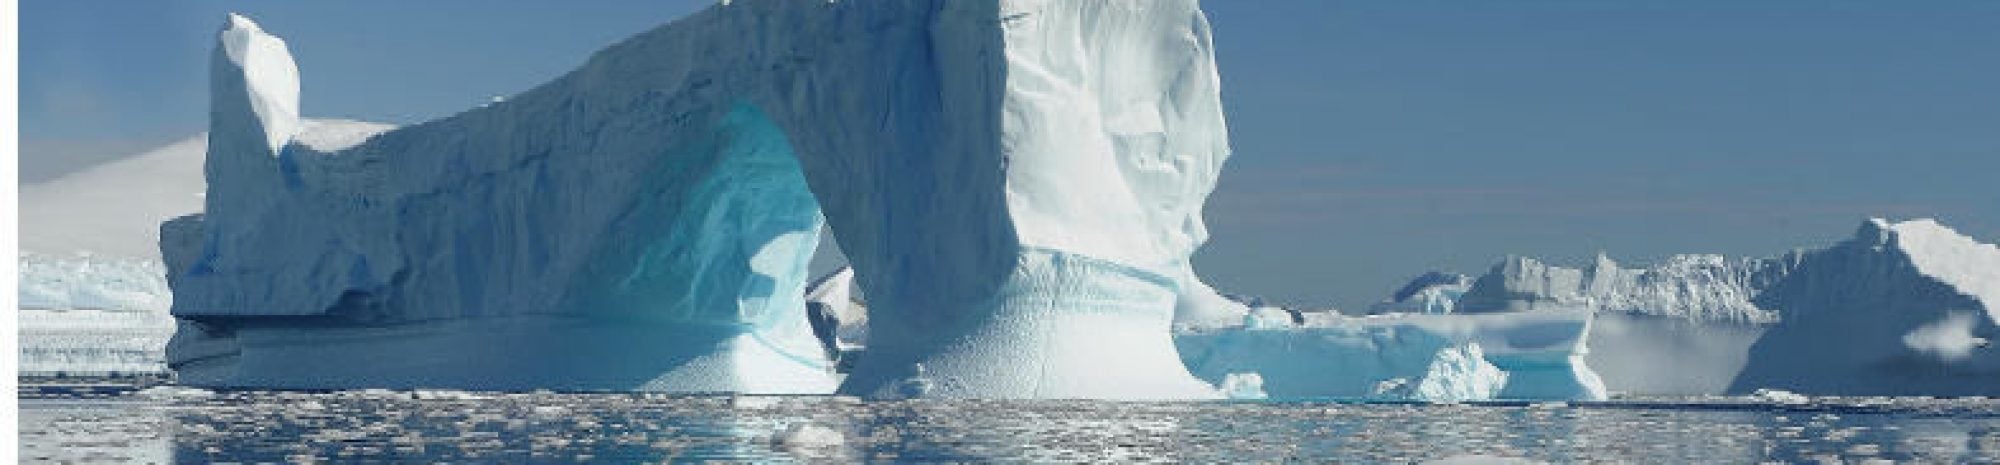 Un voyage d’exception en Antarctique